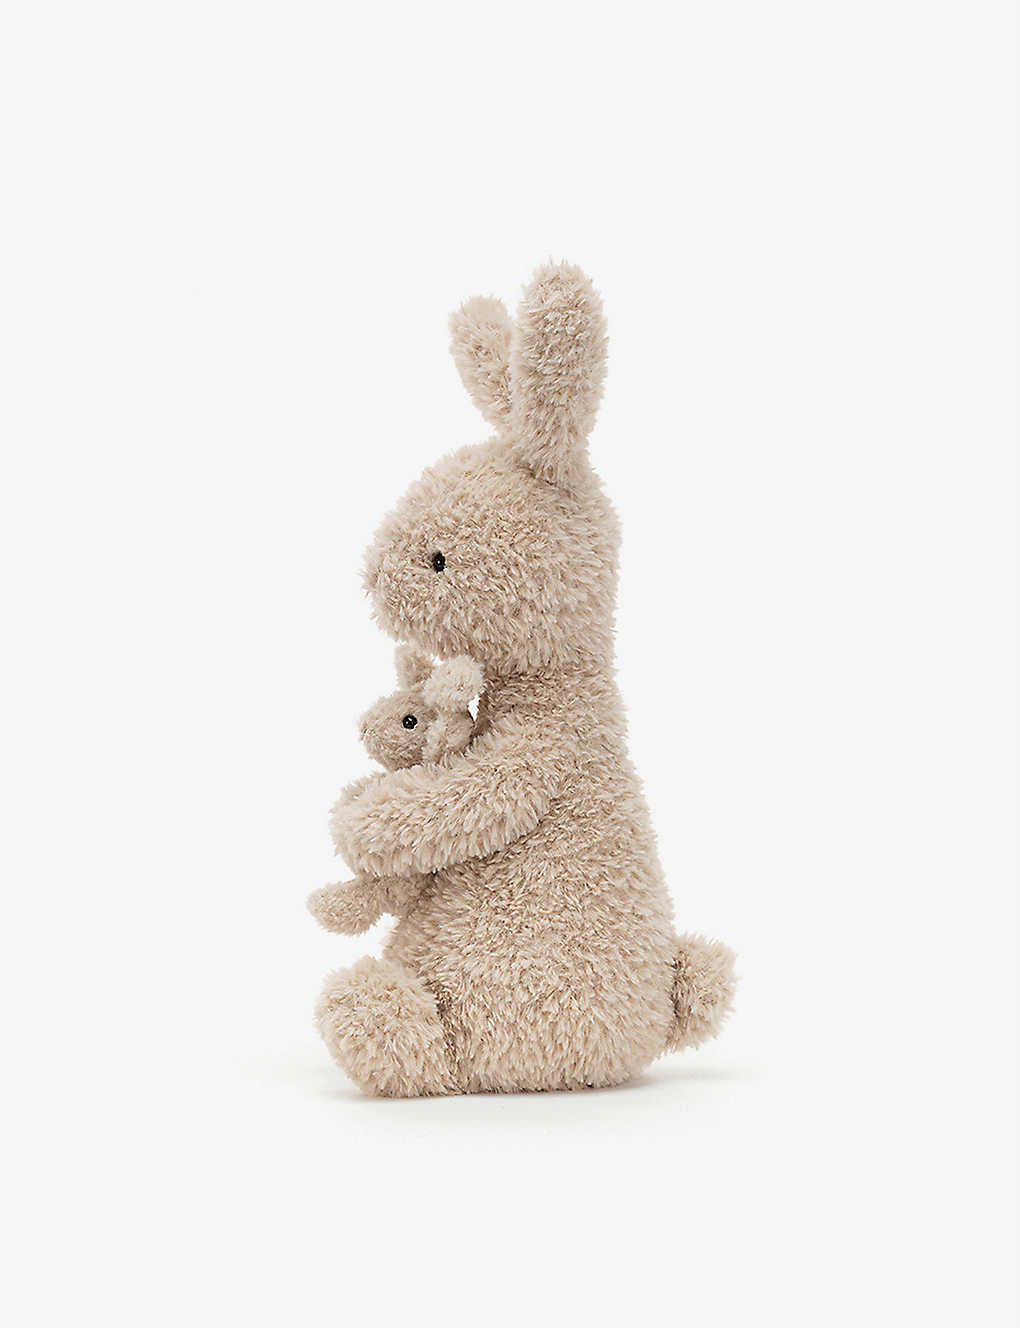 Huddles Bunny - Jellycat